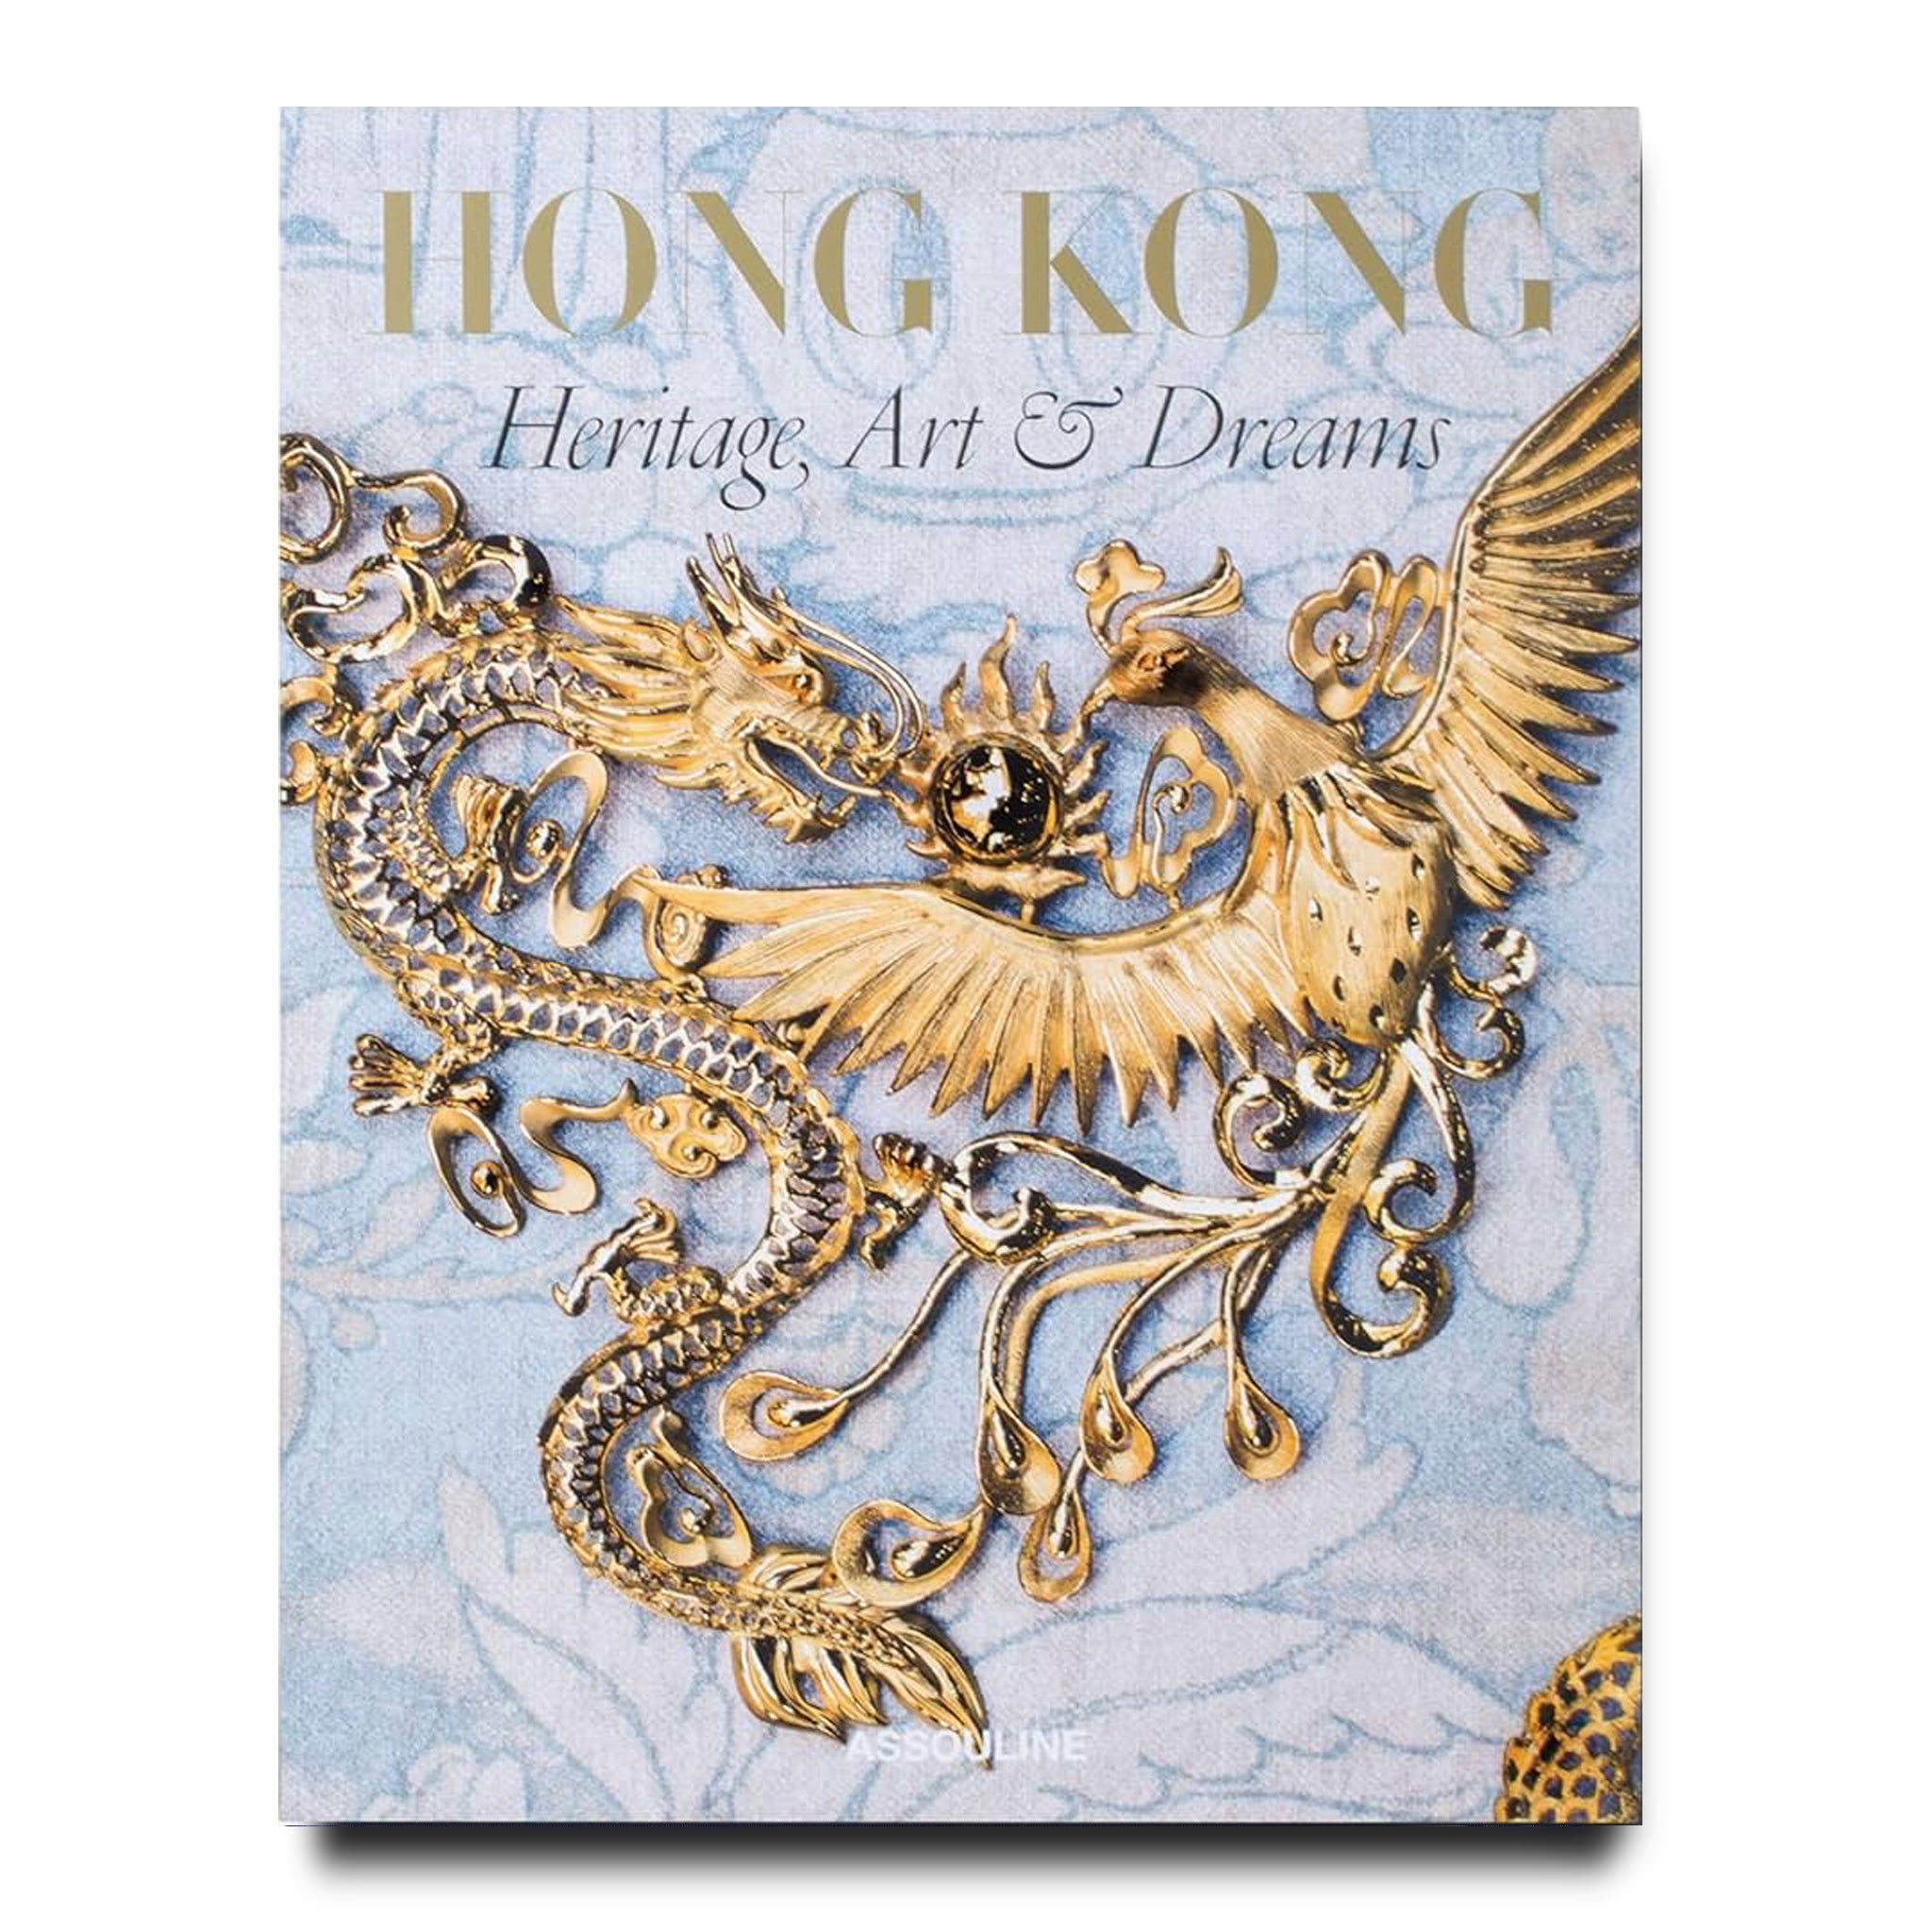 HONG KONG: HERITAGE, ART, AND DREAMS